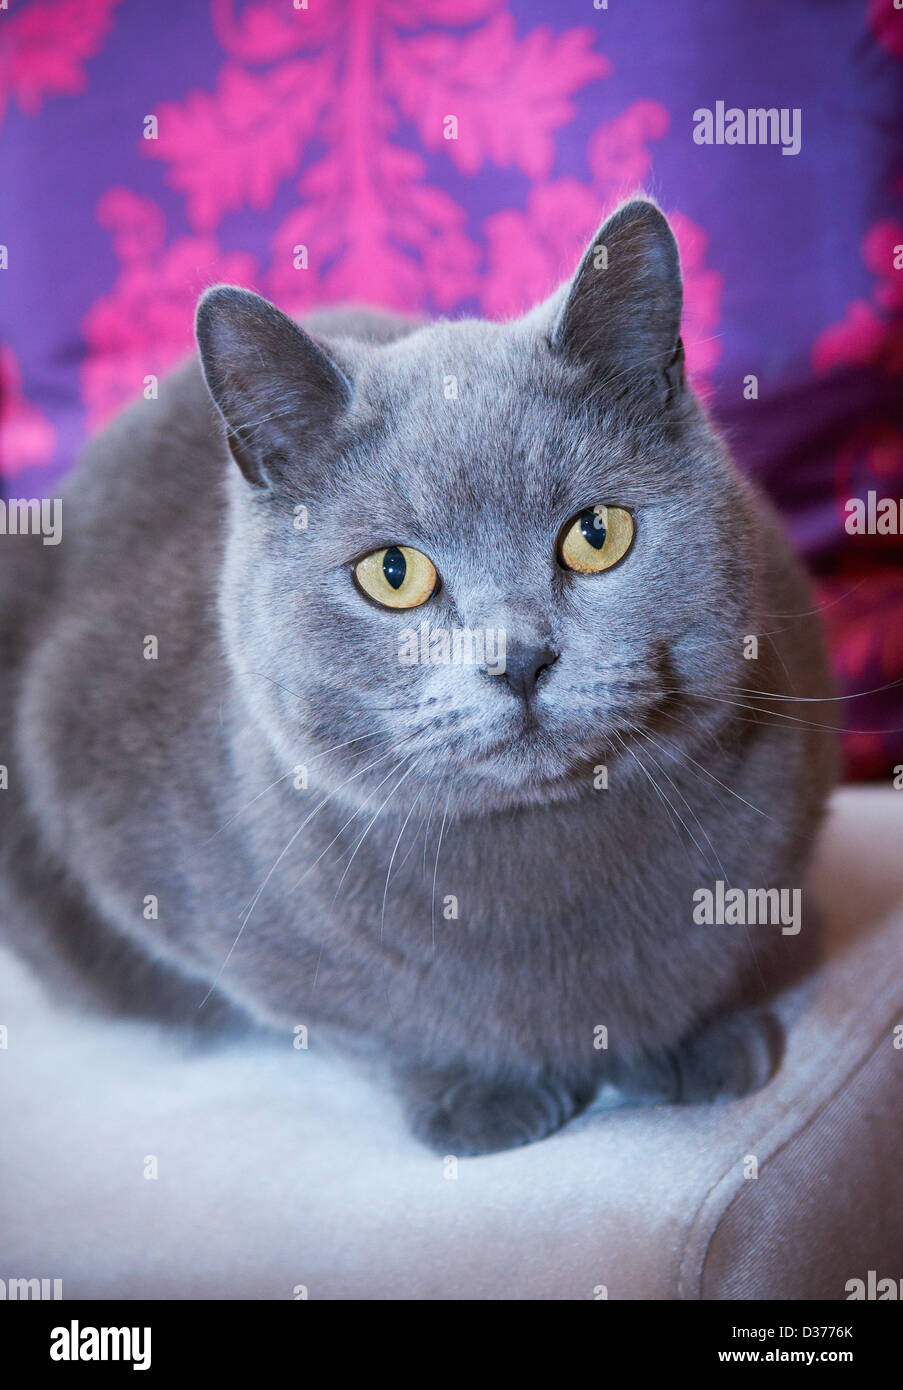 British Shorthair cat Stock Photo